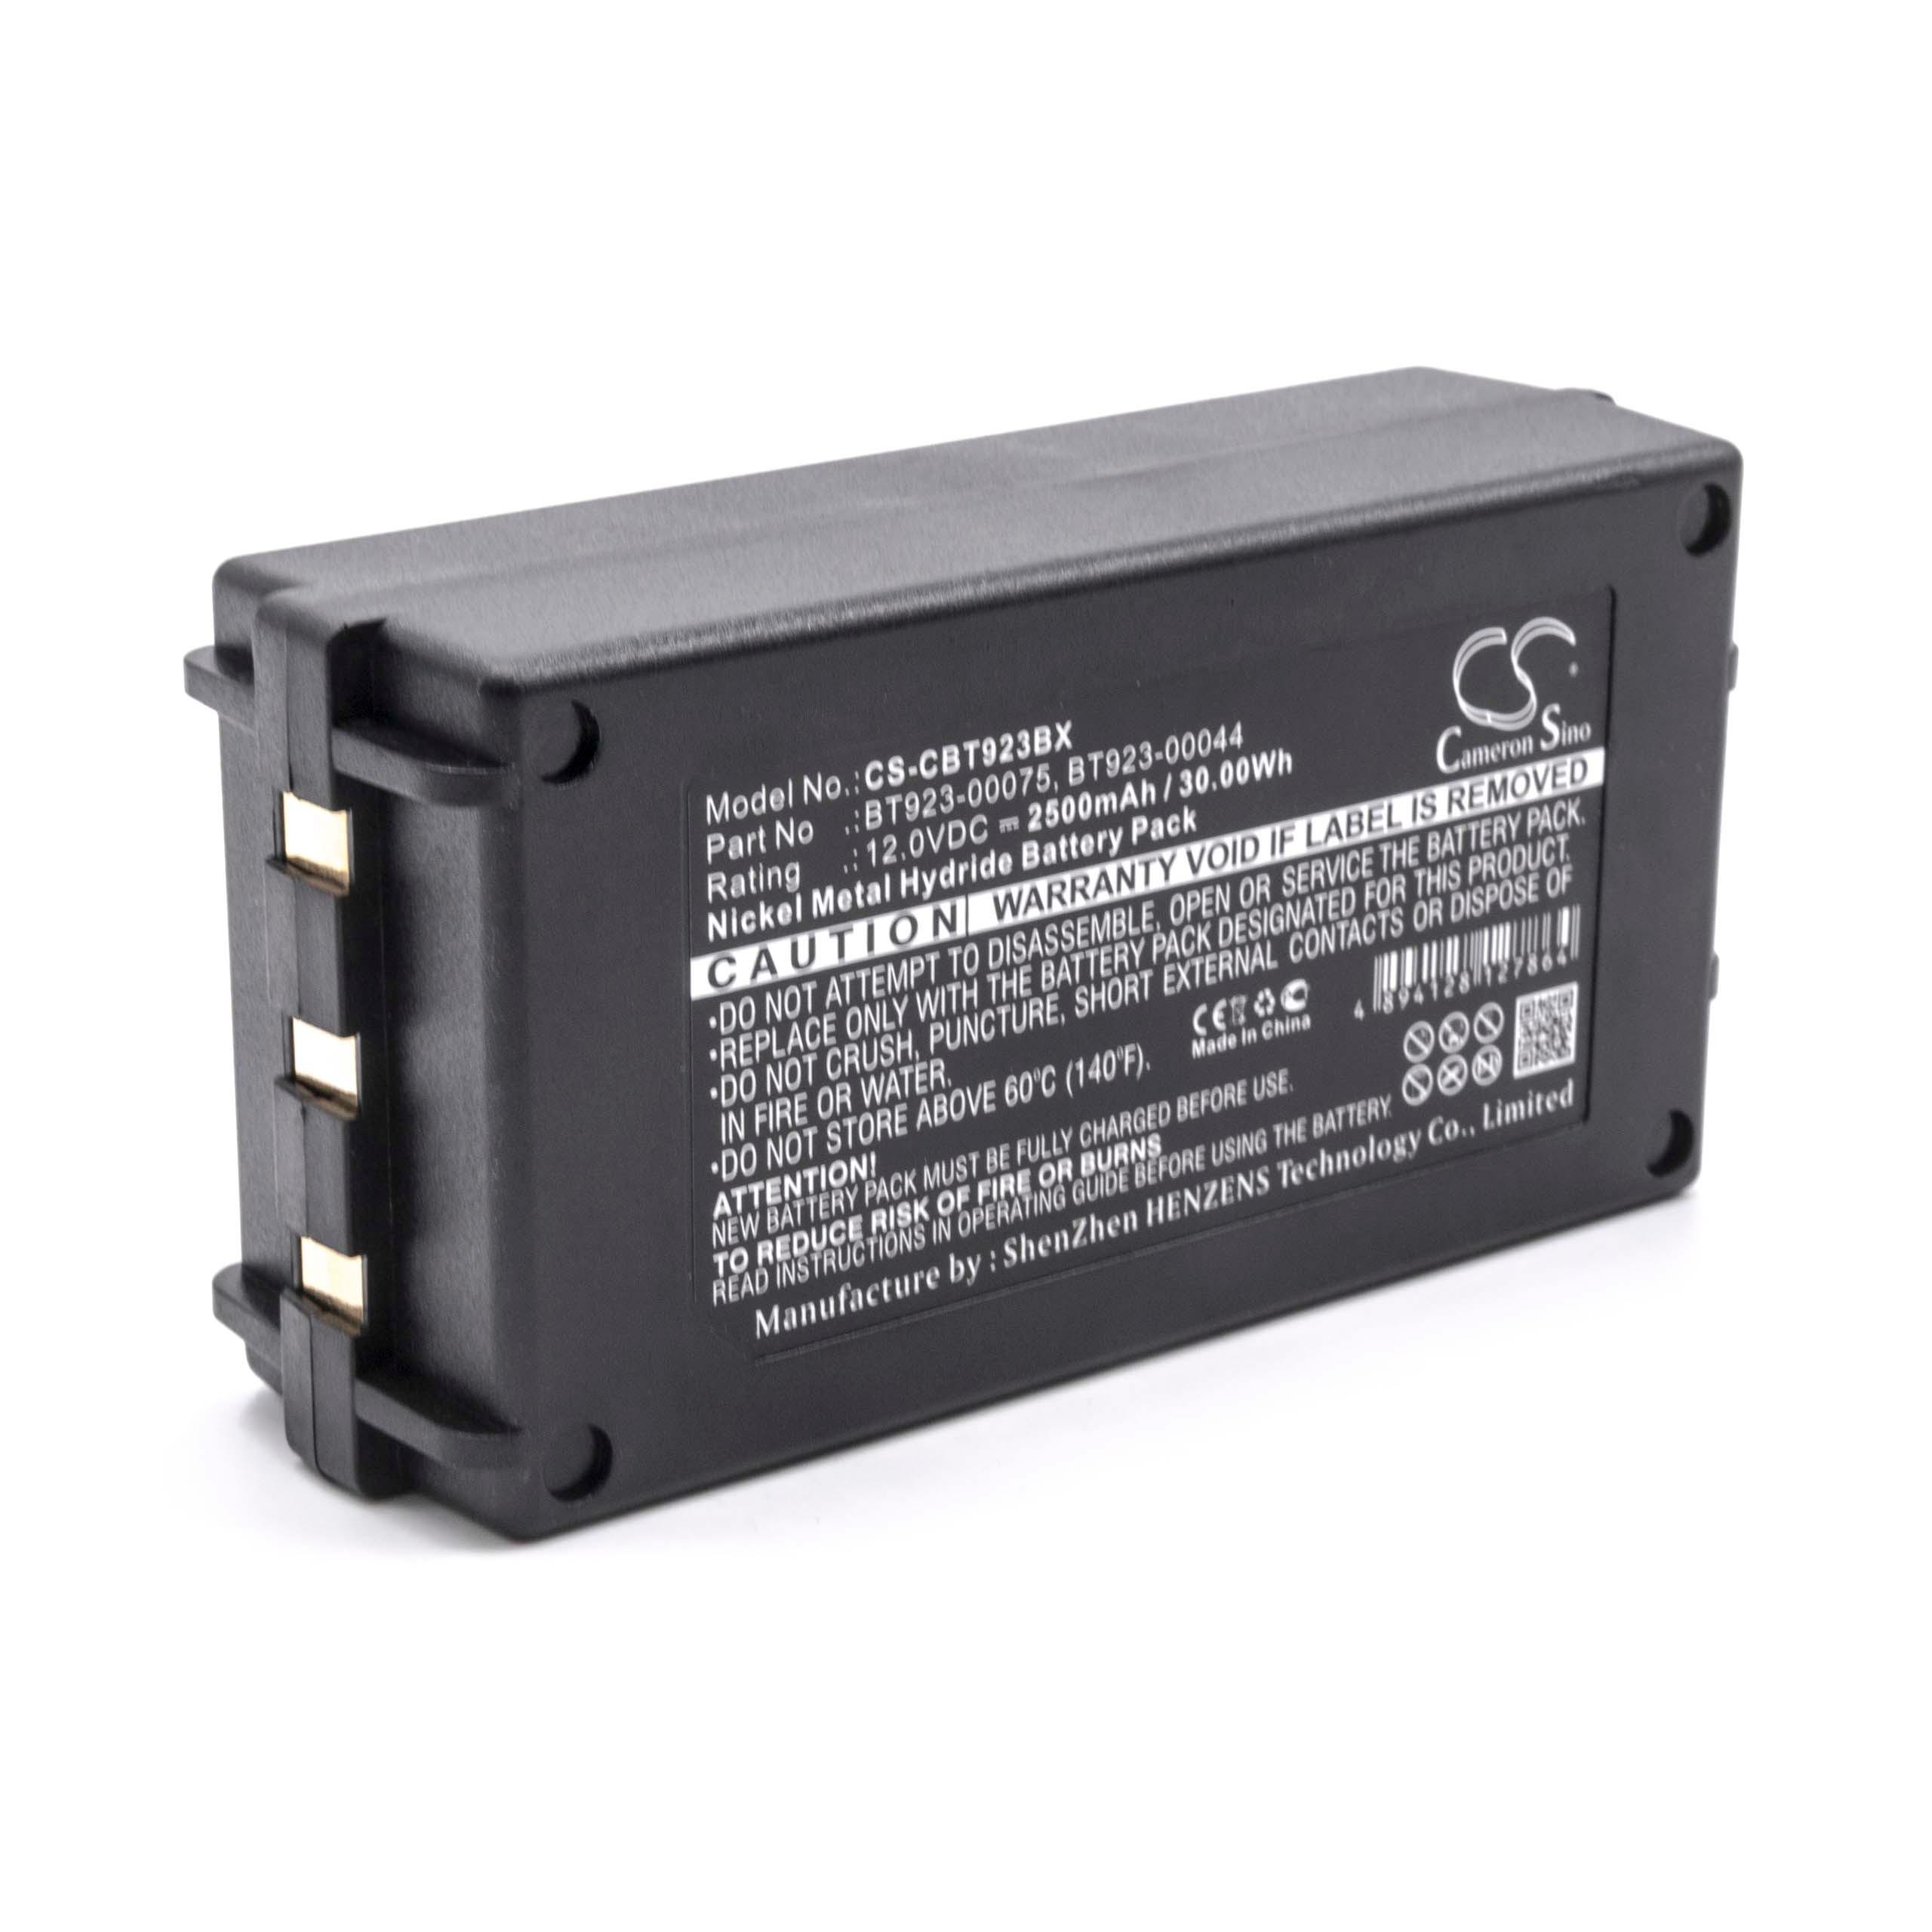 Batterie remplace Cattron-Theimeg BT081-00053 pour télécomande industrielle - 2500mAh 12V NiMH